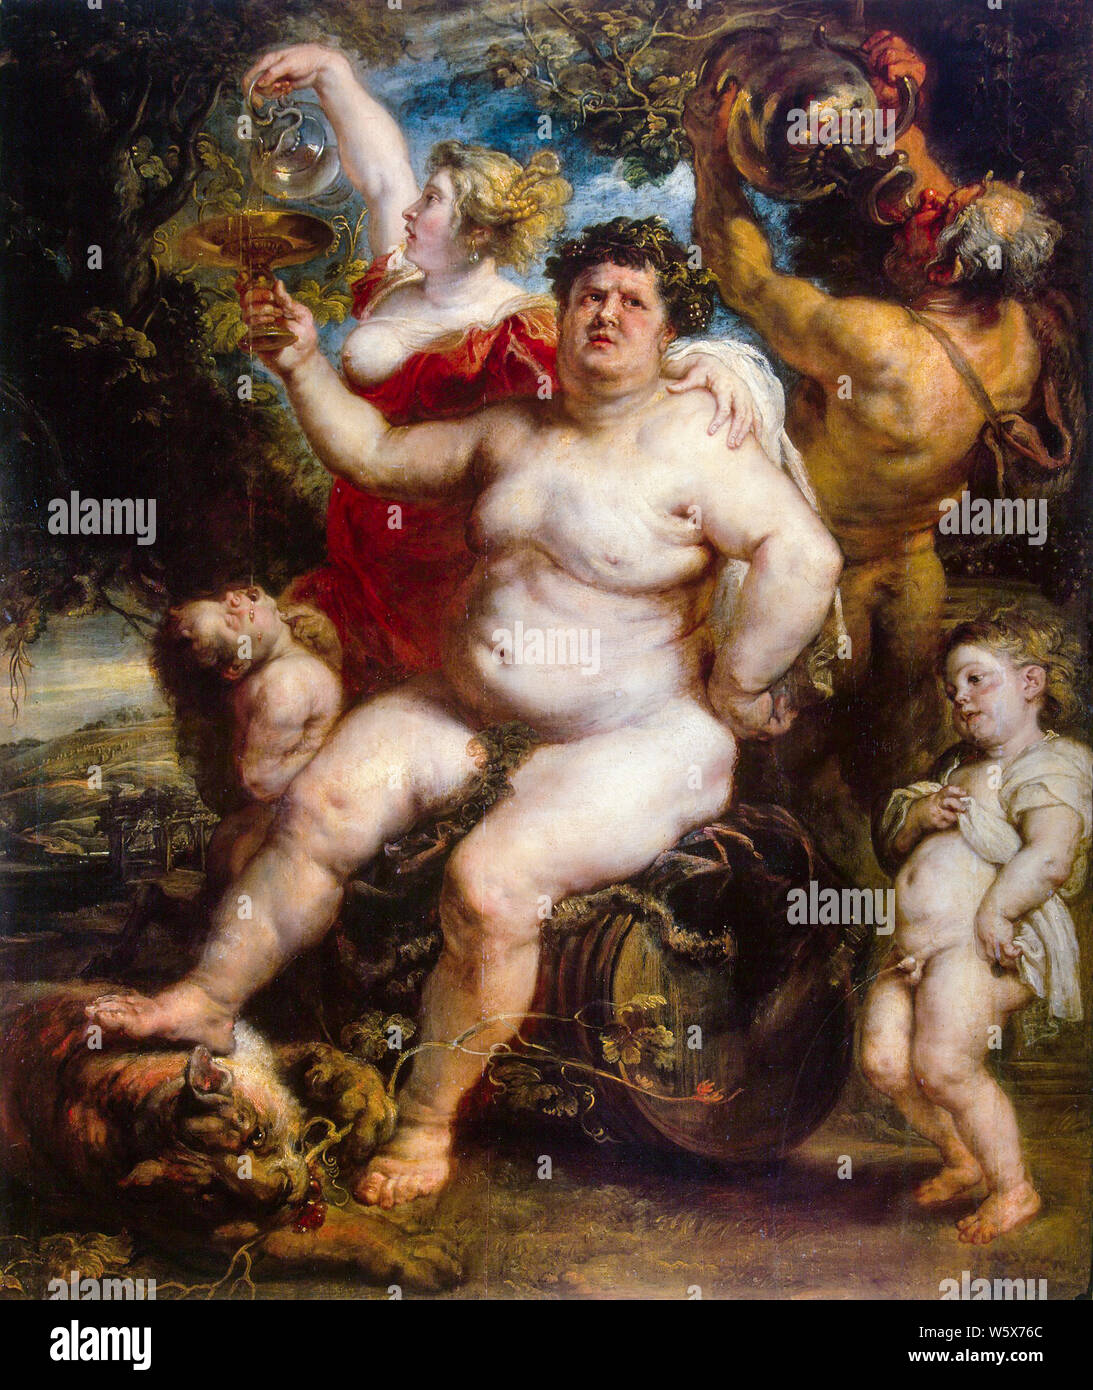 Peter Paul Rubens, Bacchus, peinture, 1638-1640 Banque D'Images